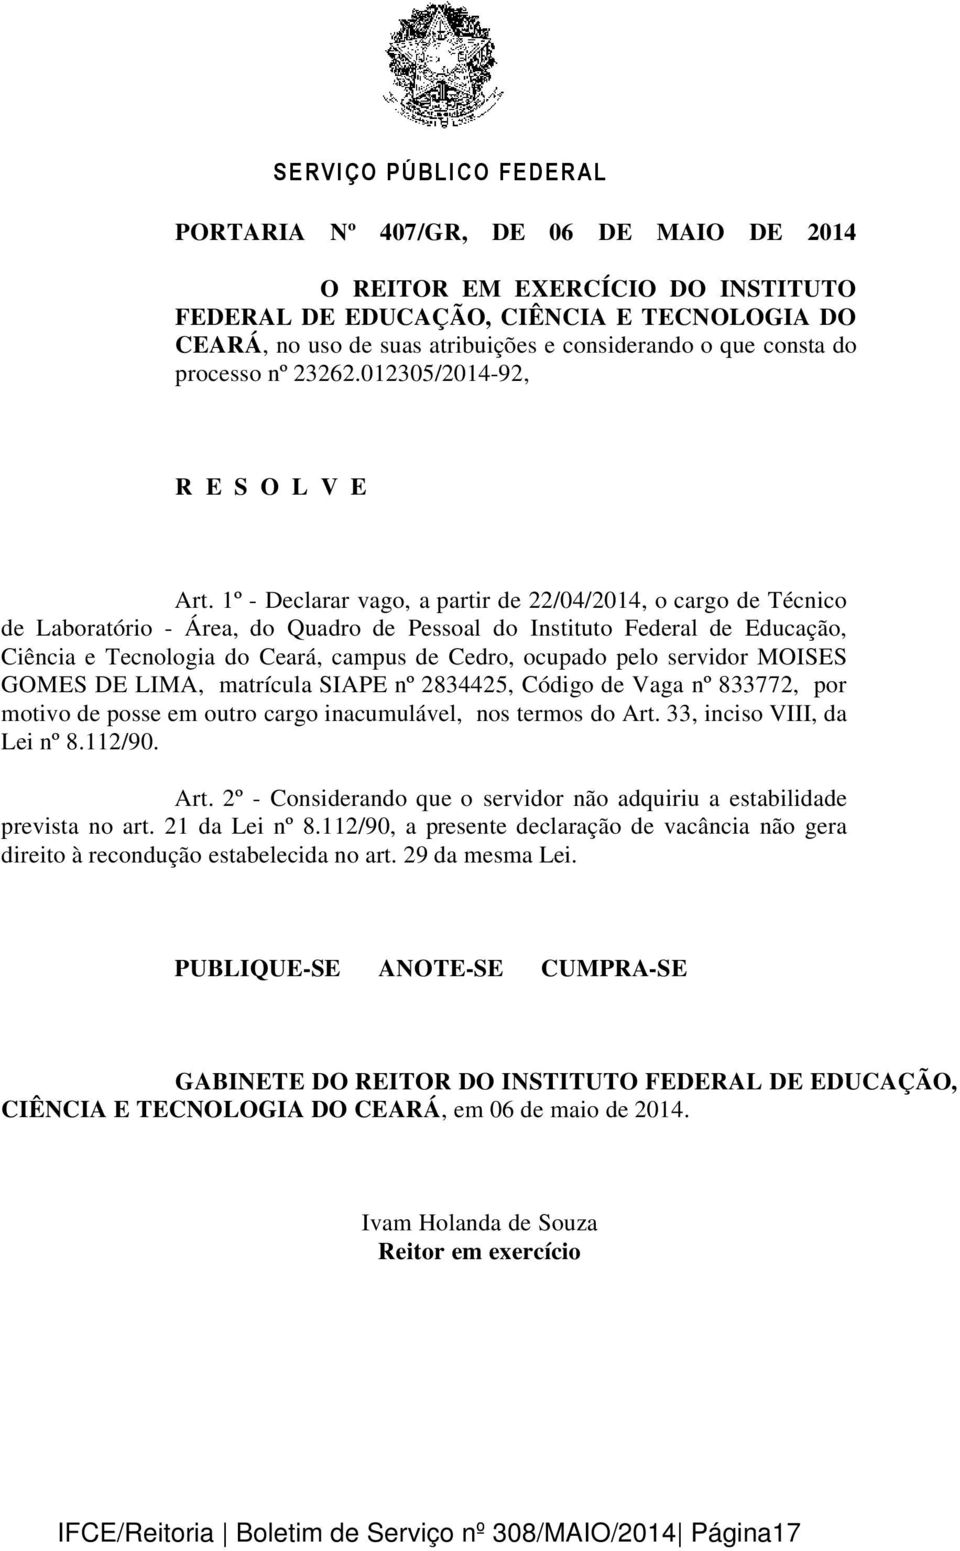 1º - Declarar vago, a partir de 22/04/2014, o cargo de Técnico de Laboratório - Área, do Quadro de Pessoal do Instituto Federal de Educação, Ciência e Tecnologia do Ceará, campus de Cedro, ocupado